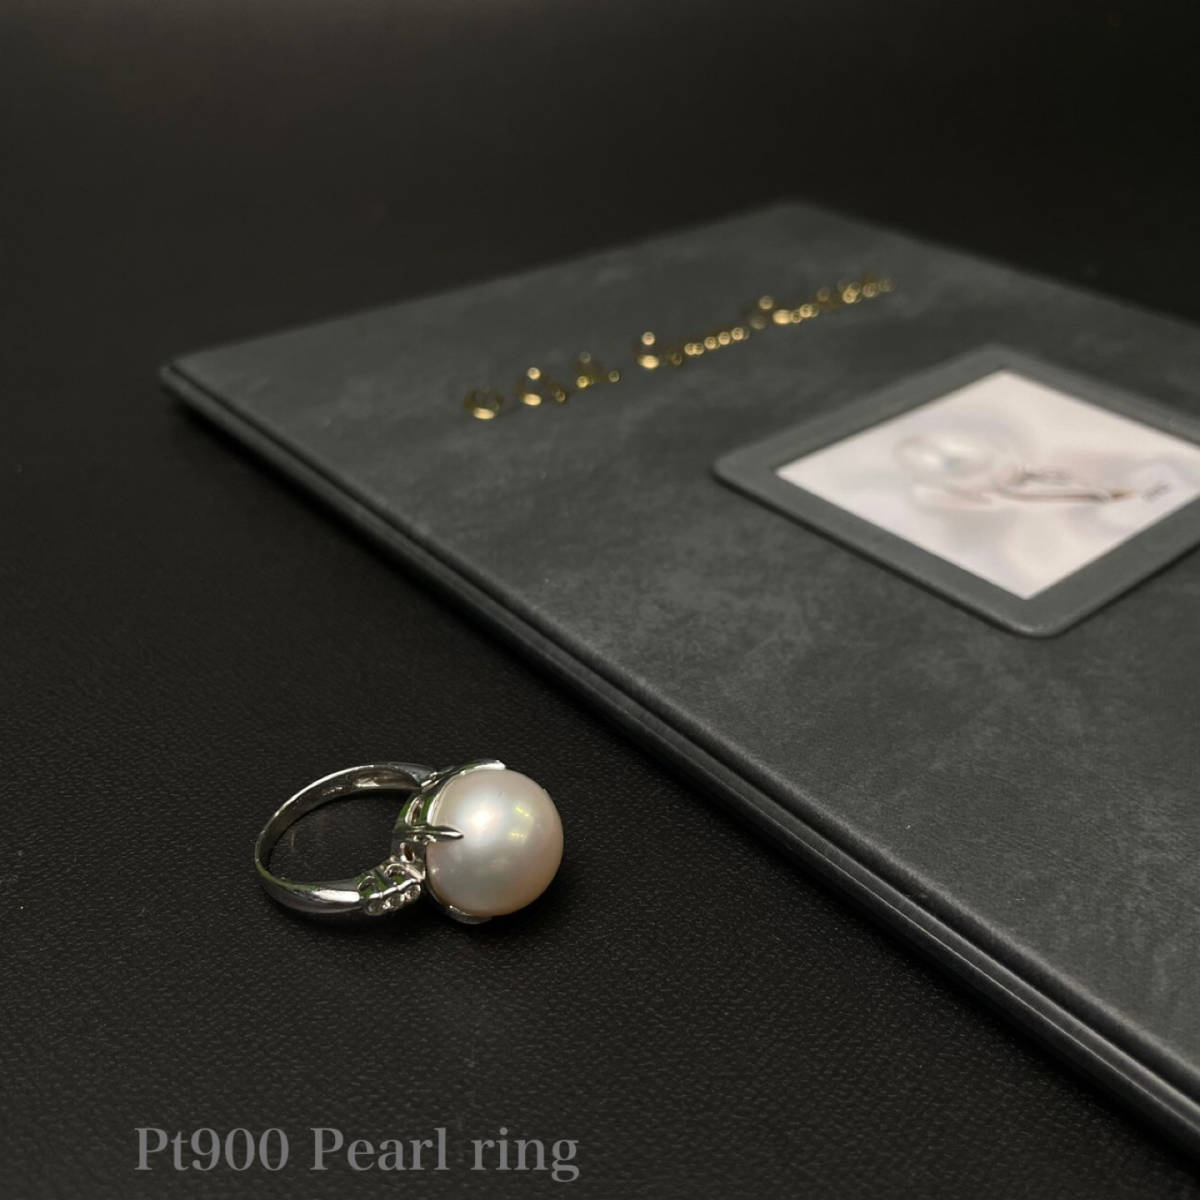 国内外の人気 ☆14.7mm珠の白蝶貝真珠+ダイアのPt900製8号リング・11.1